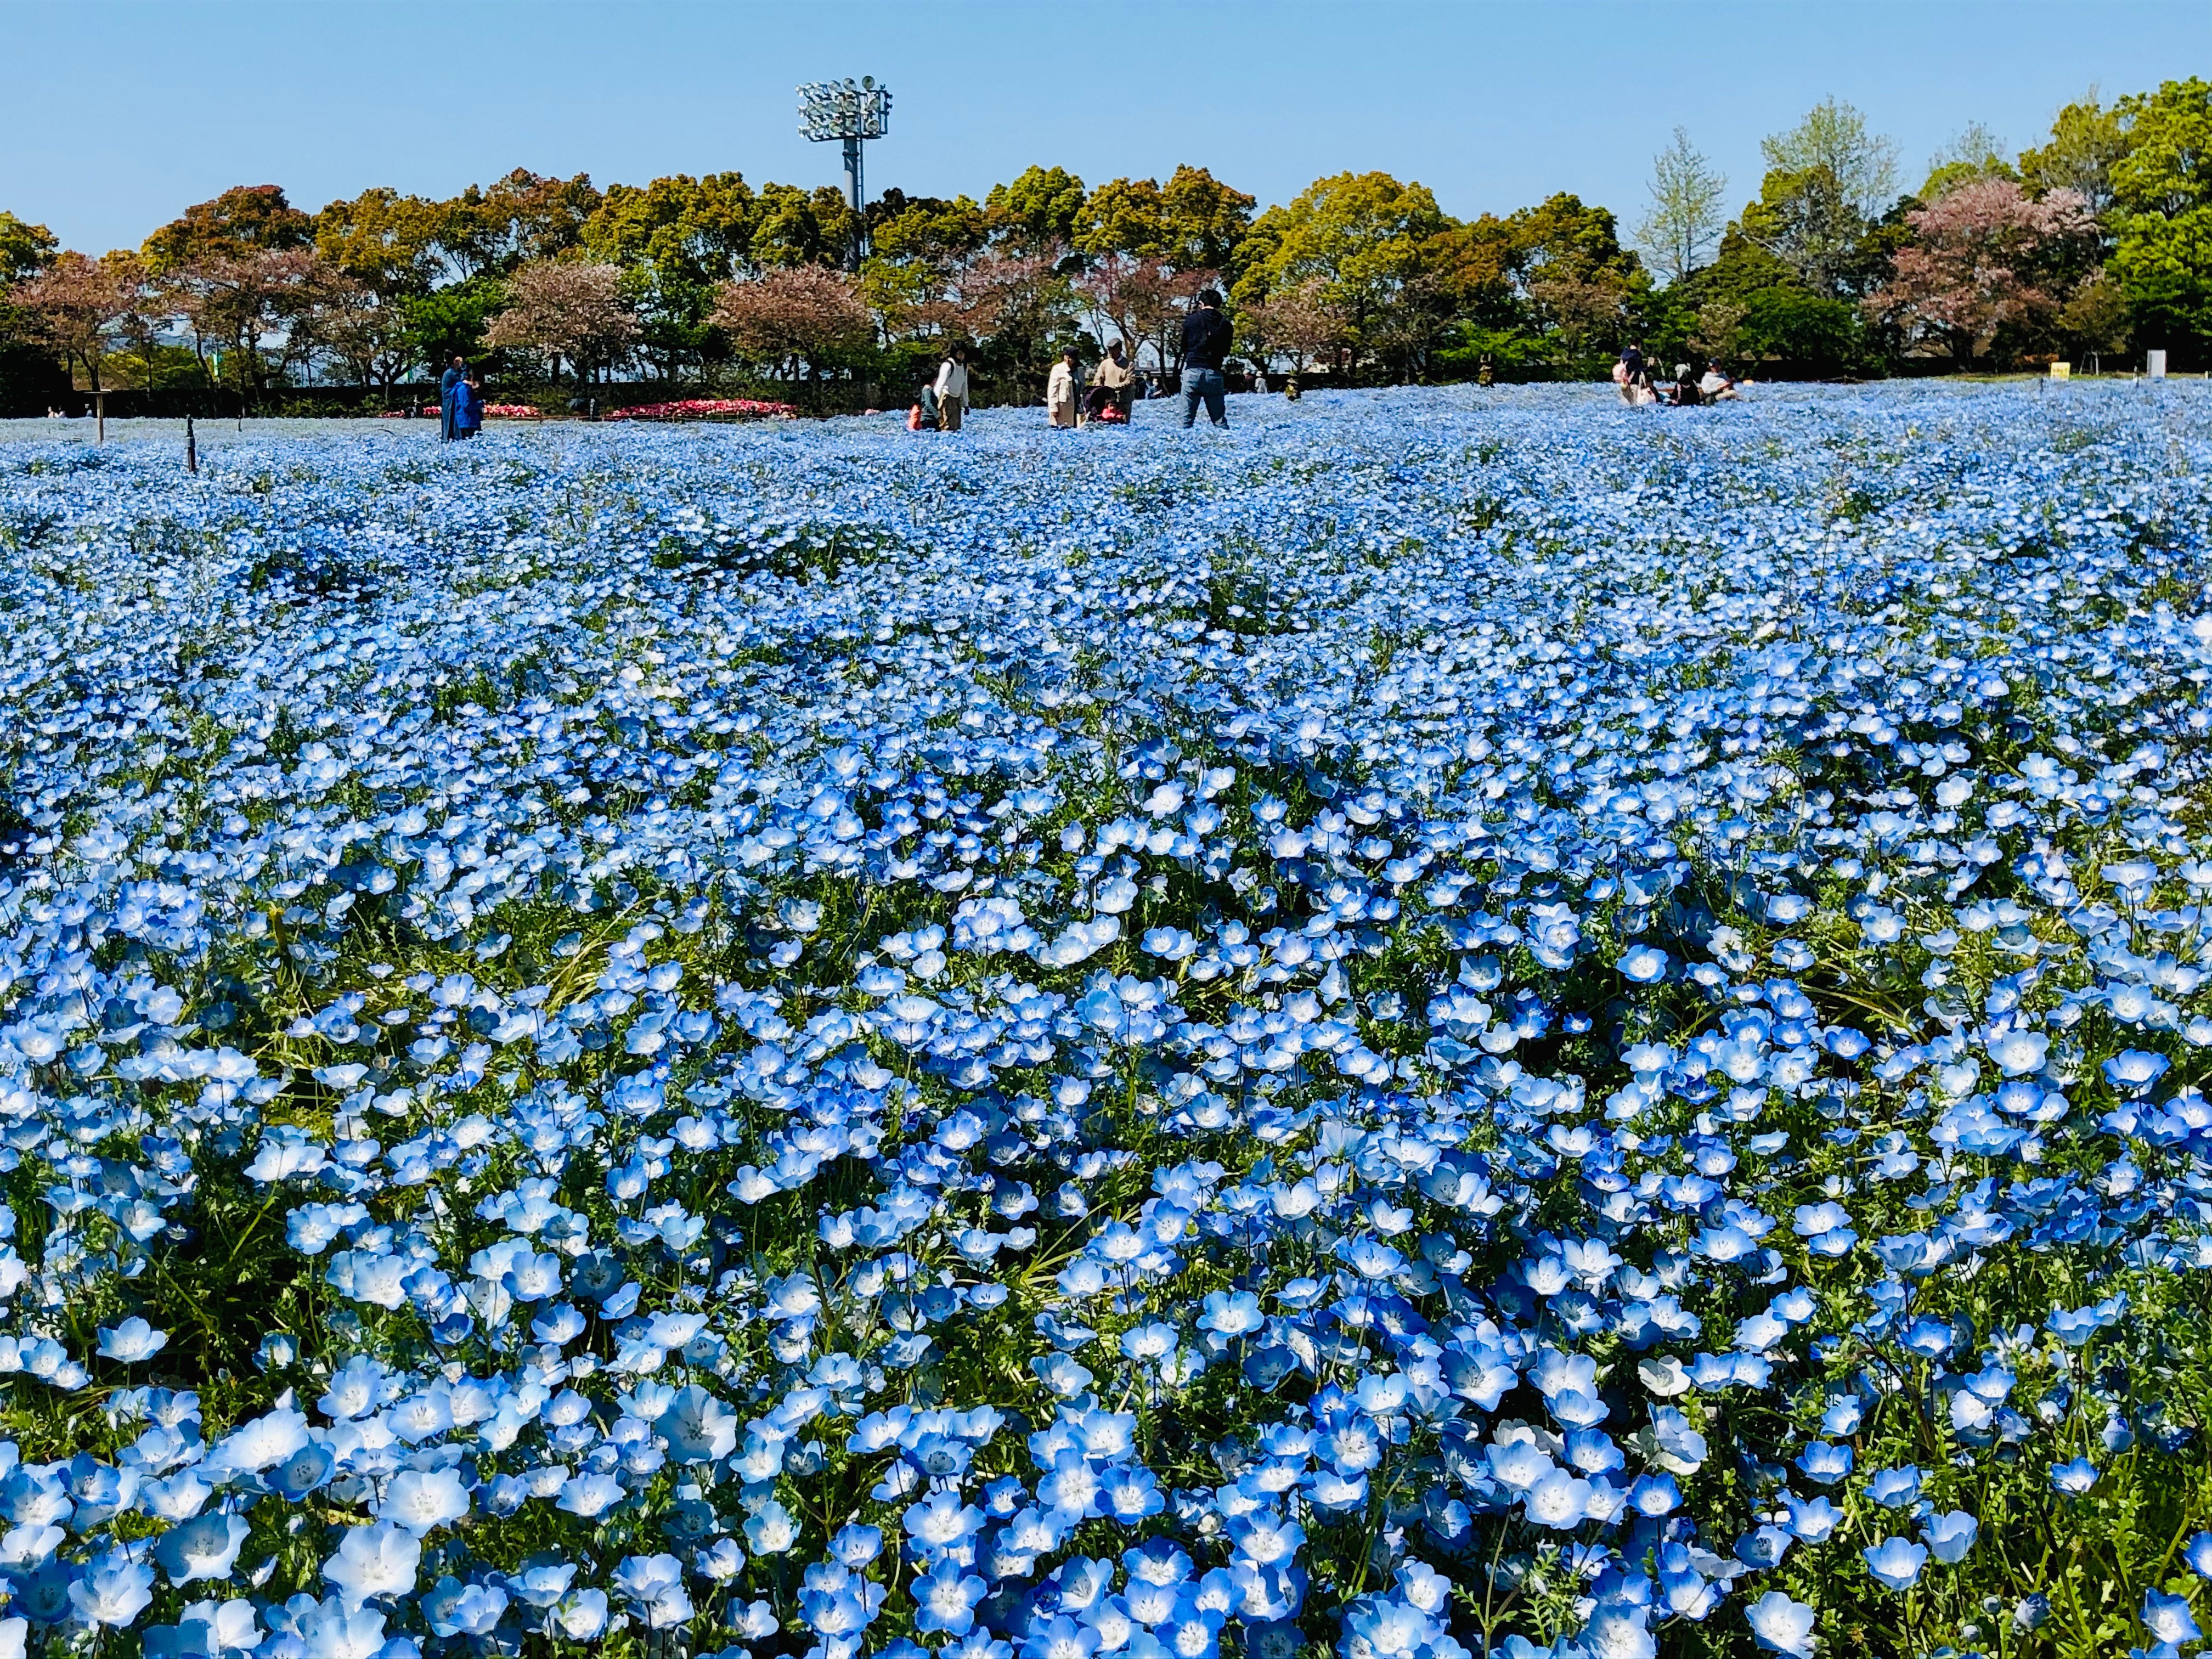 ナガシマリゾート公式 春の訪れ 可憐な青色の花 ネモフィラ 空と海と丘が一体化したかのような絶景 青い花 が広がります T Co 6ur81r8akg なばなの里 三重県 桑名市 Nemophila 空 海 青 花言葉 花 Flower 風景 ファインダー越し